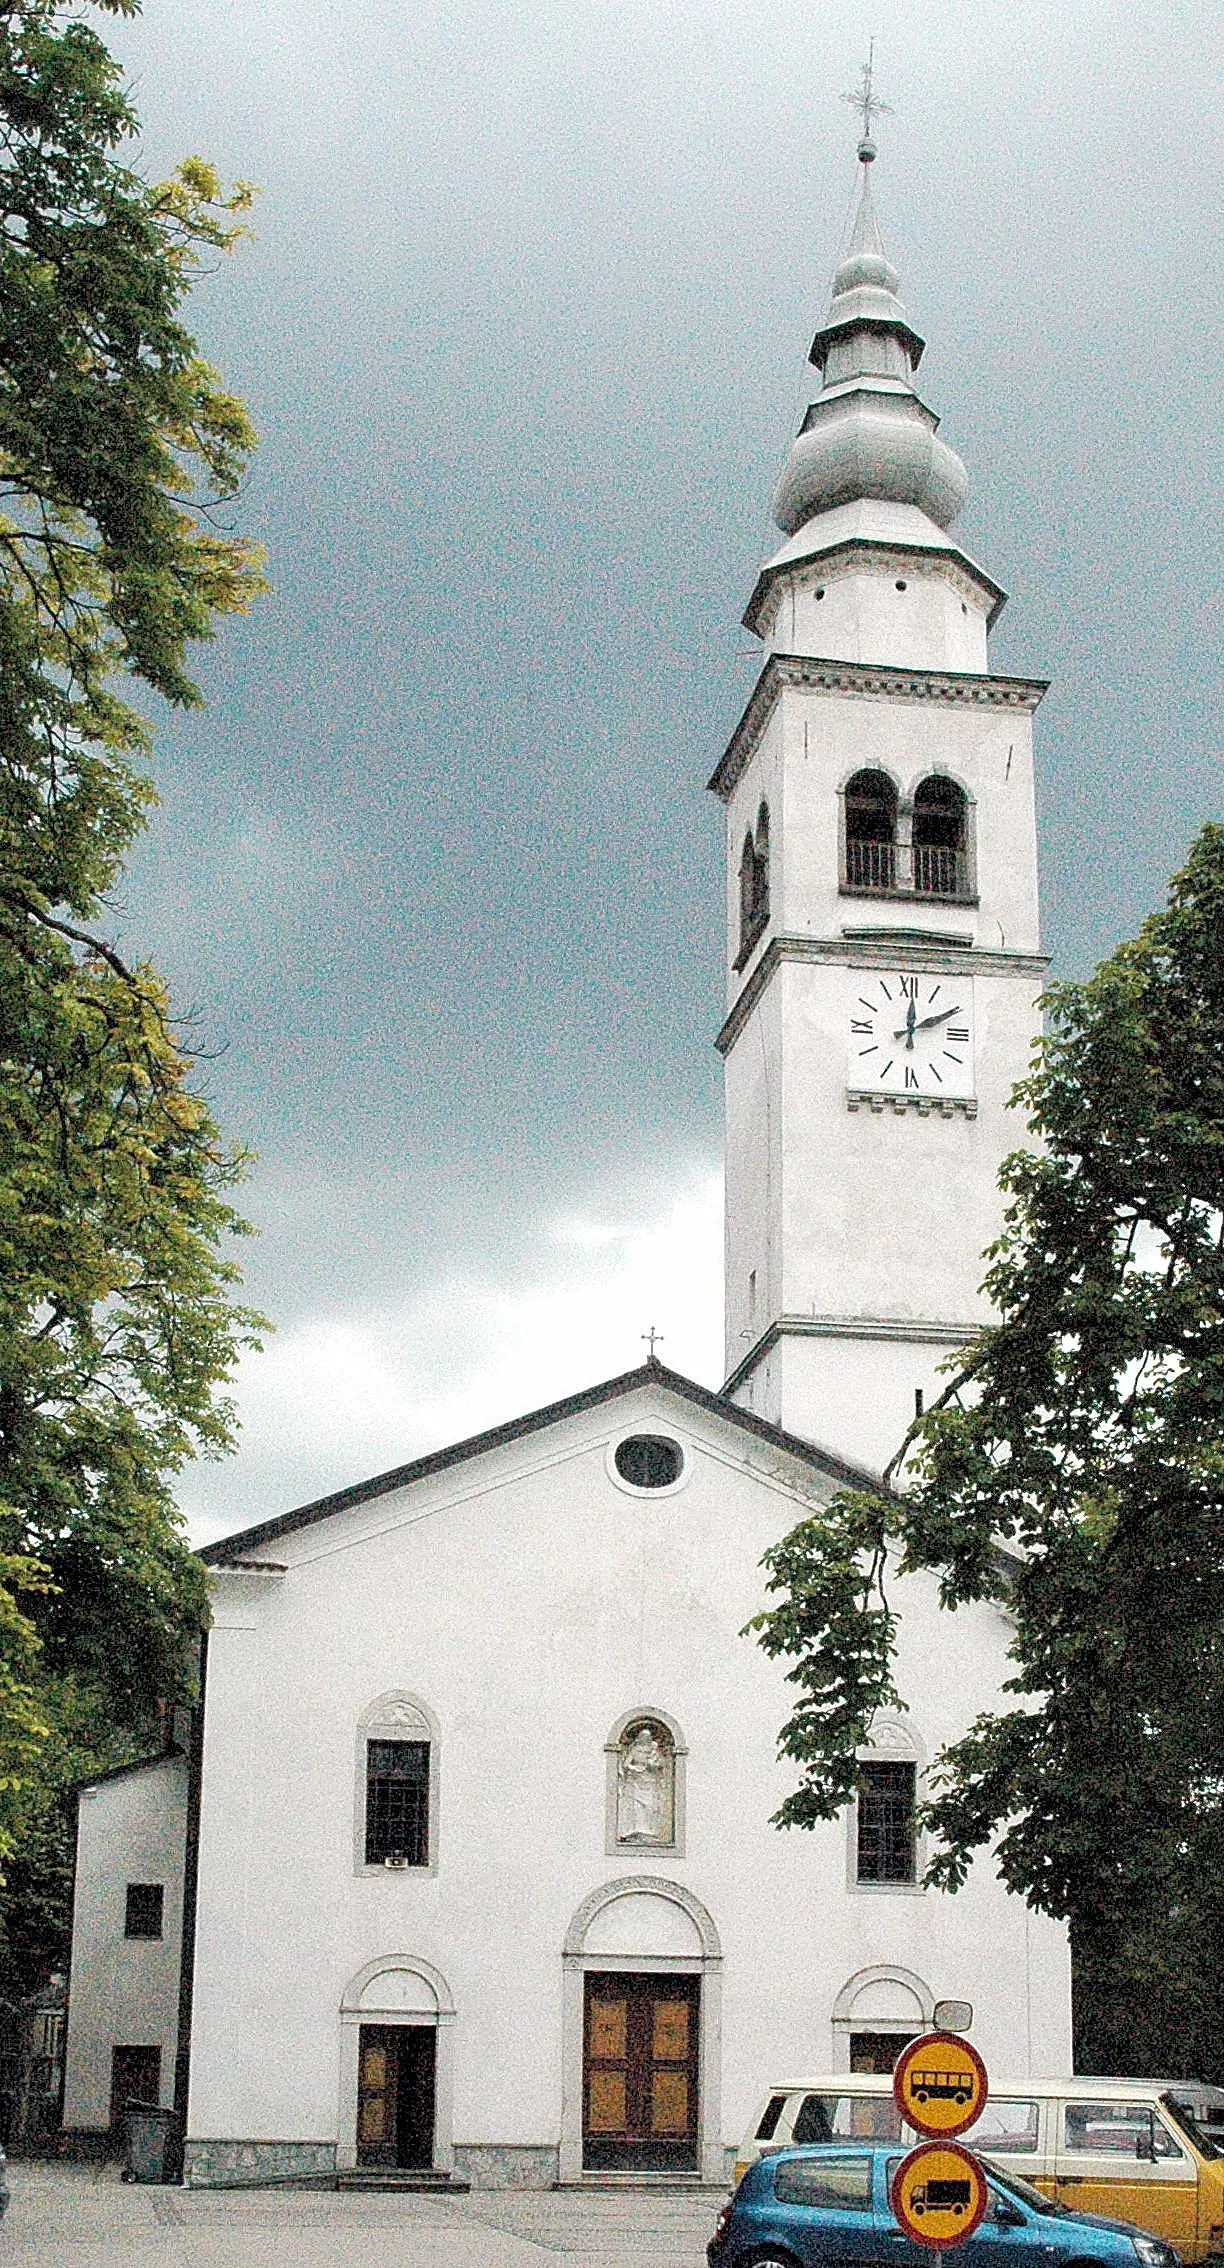 Bilde av Zahodna Slovenija